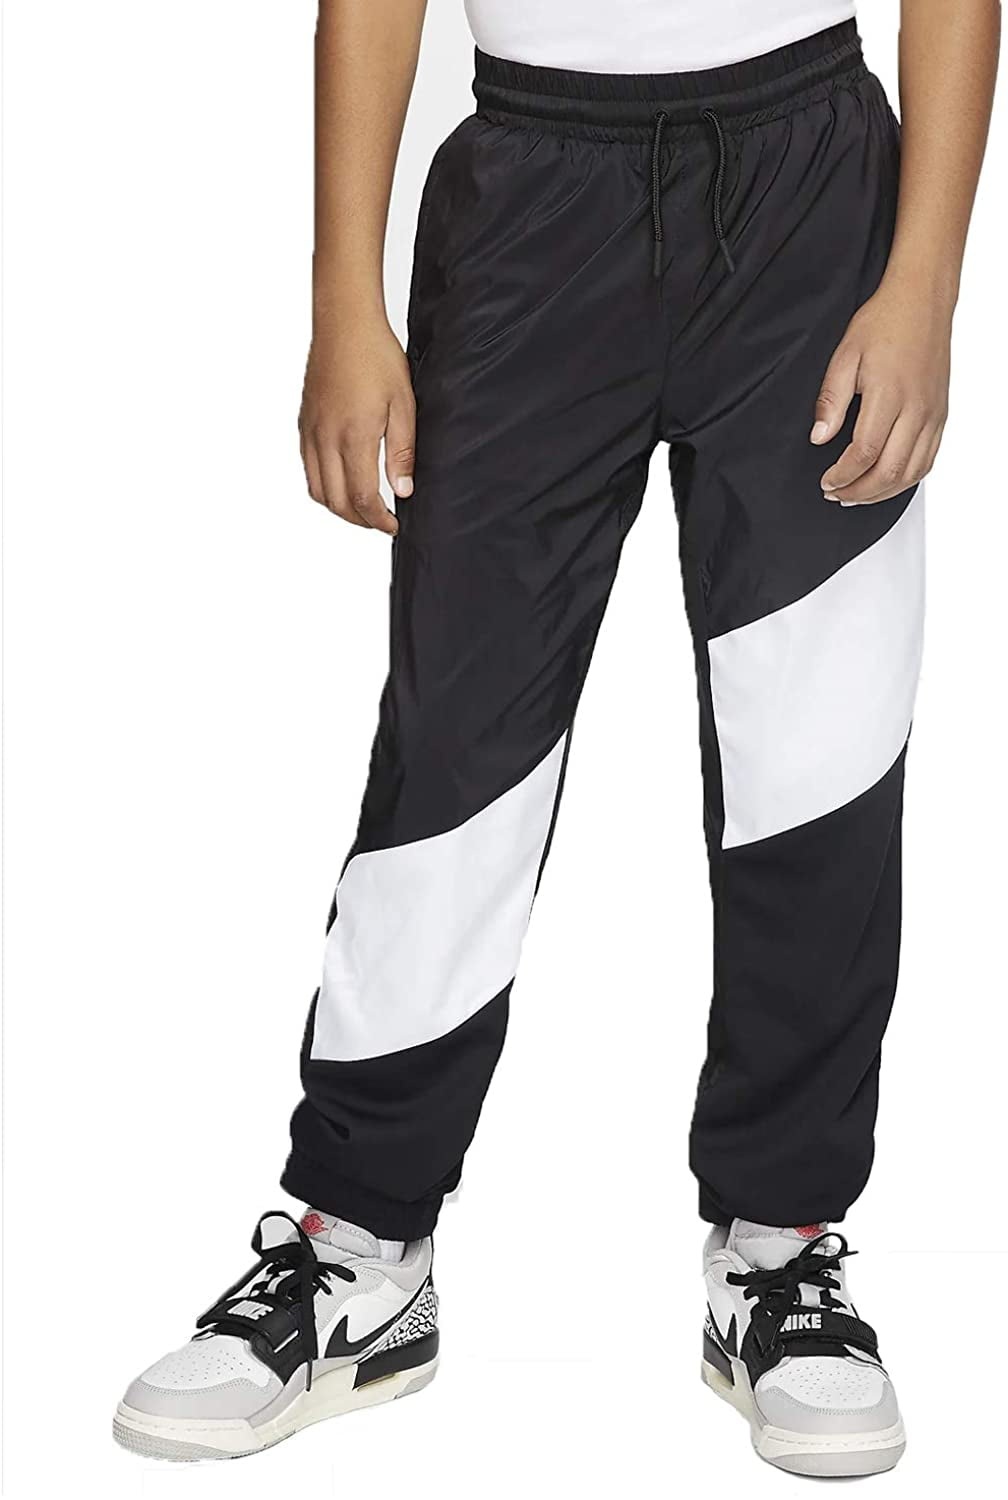 Nike Jordan Wings Sideline Athletic Pants Medium) Walmart.com